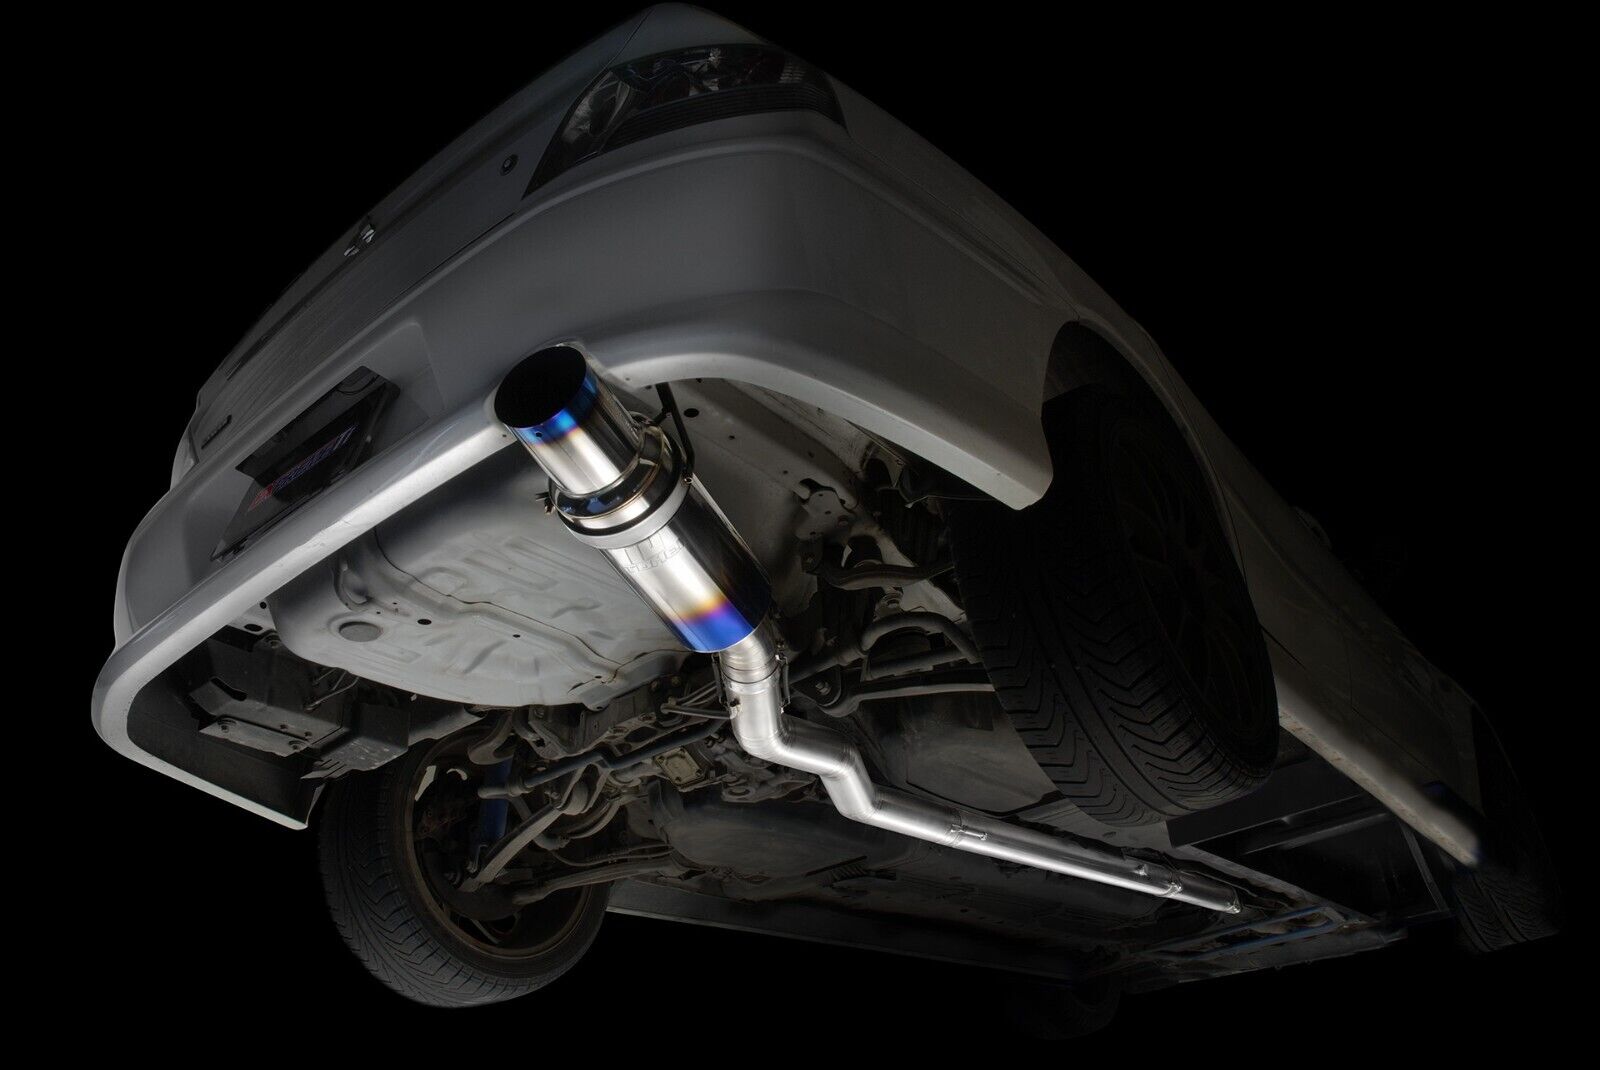 Tomei Expreme Ti Titanium Single Exhaust for Mitsubishi Lancer EVO 8-9 USDM New